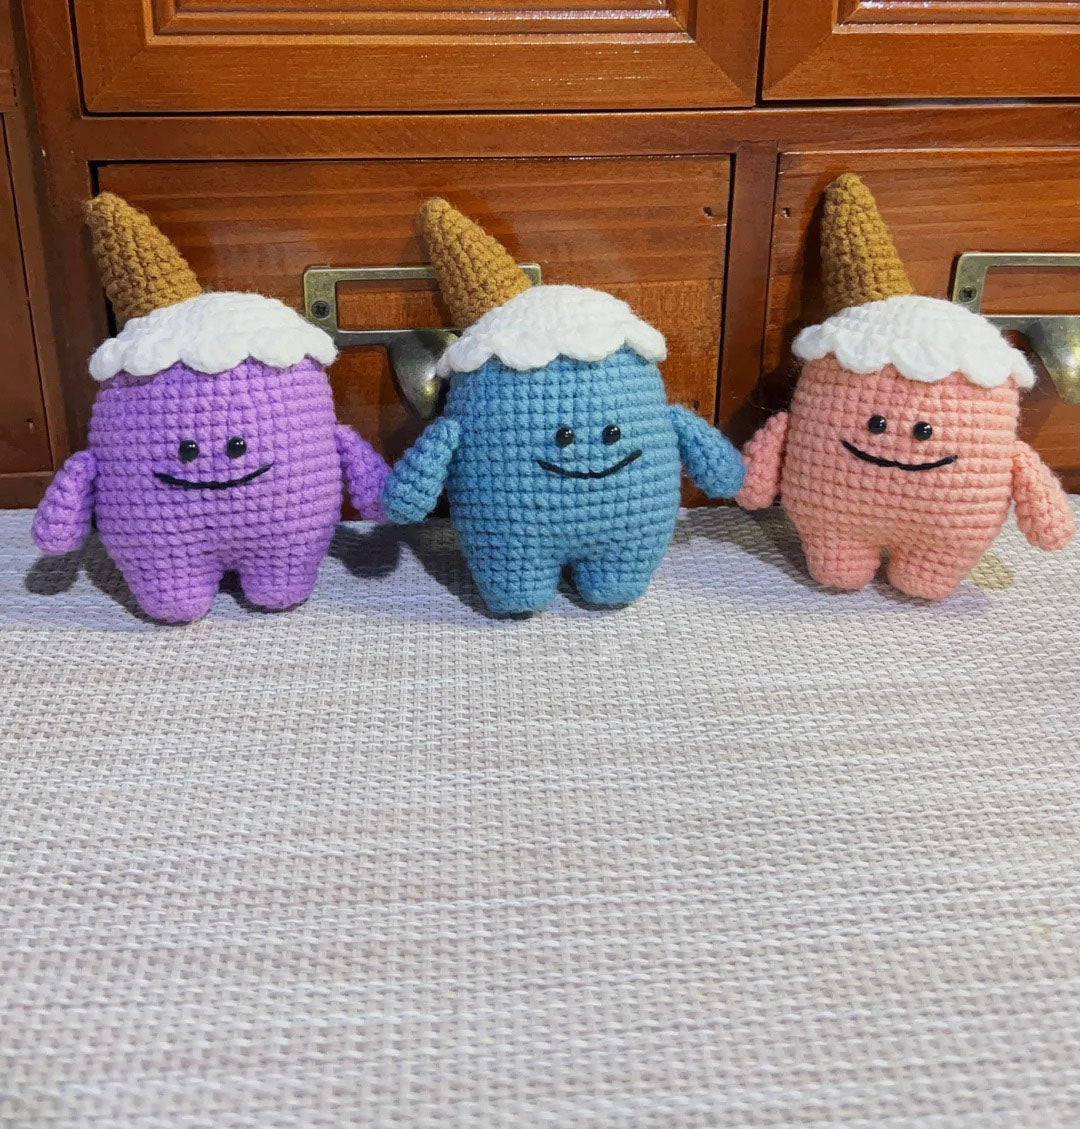 Ice Cream Monster Crochet Pattern